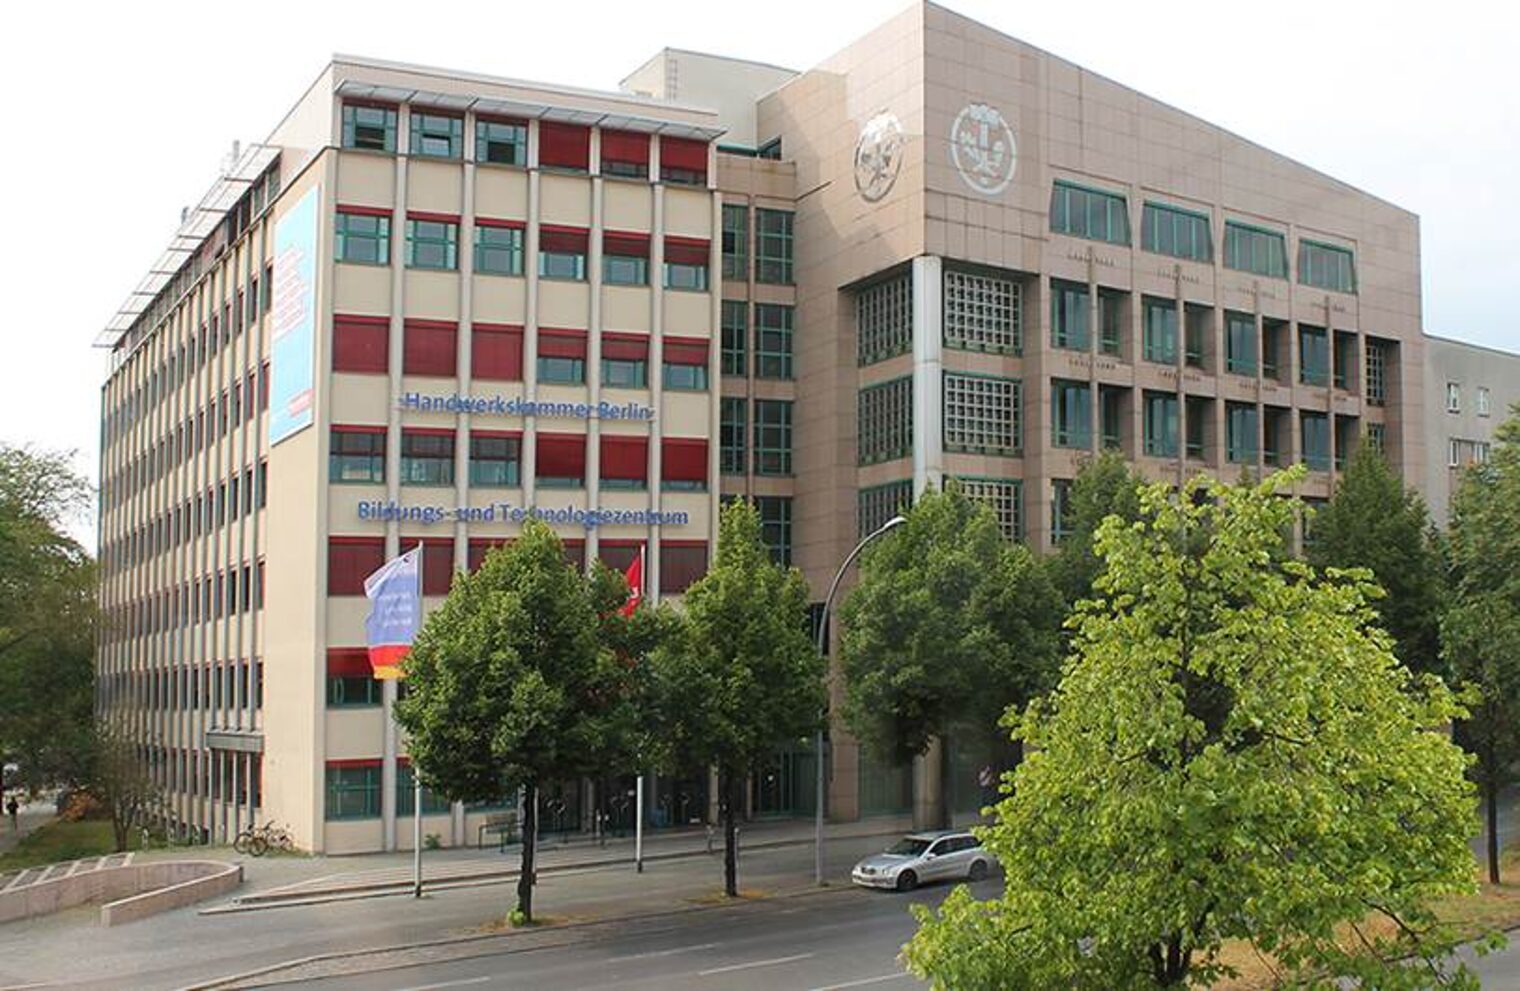 Gebäude Bildungs- und Technologiezentrum Handwerkskammer Berlin Kreuzberg